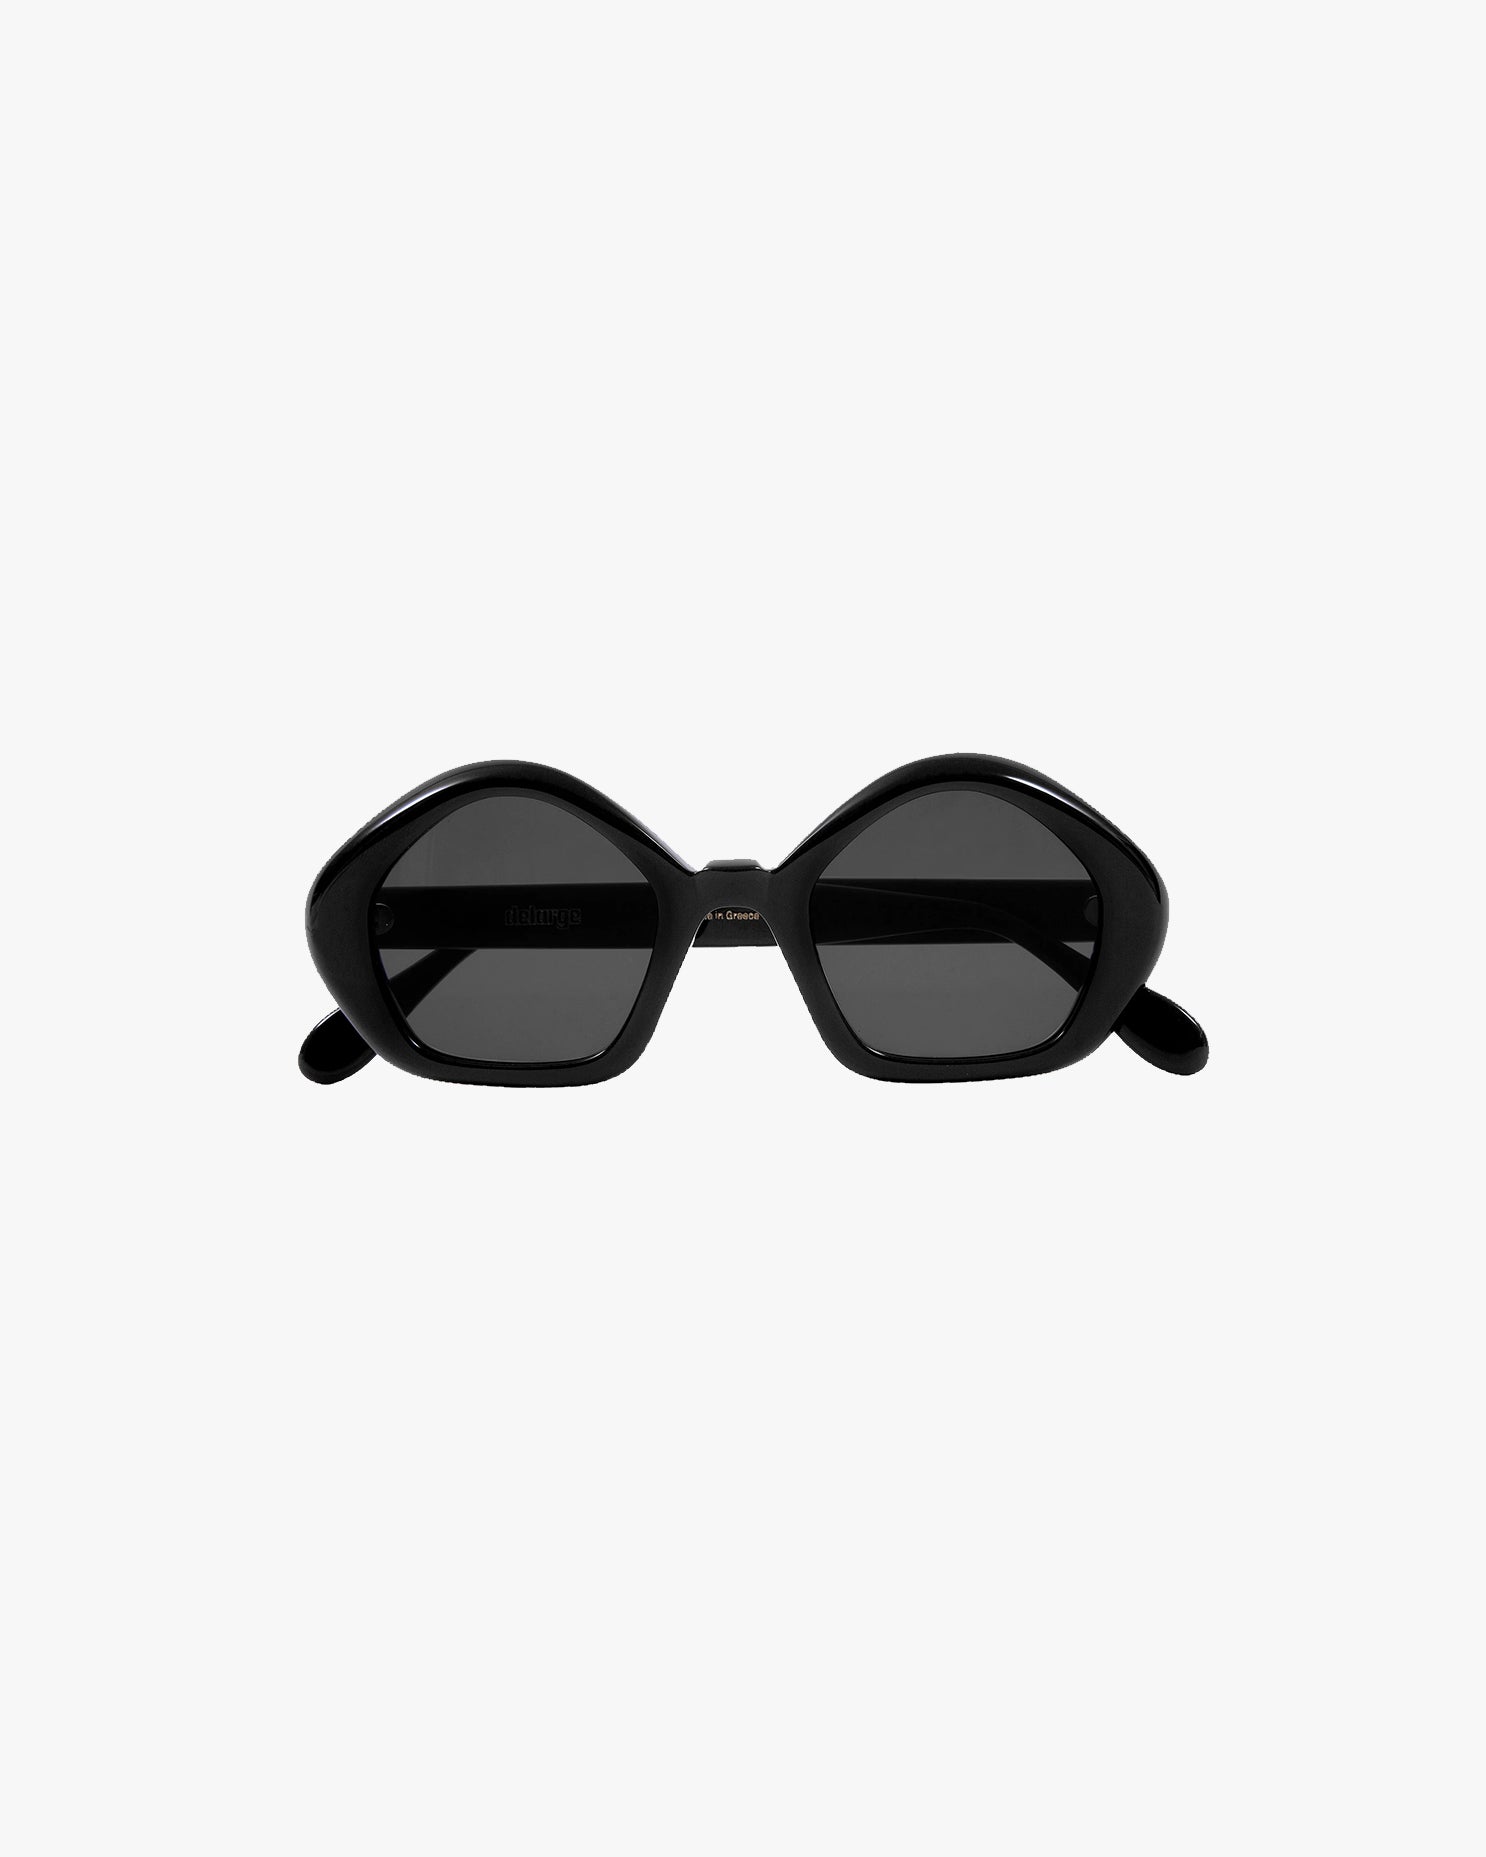 Rocky Sunglasses in Black